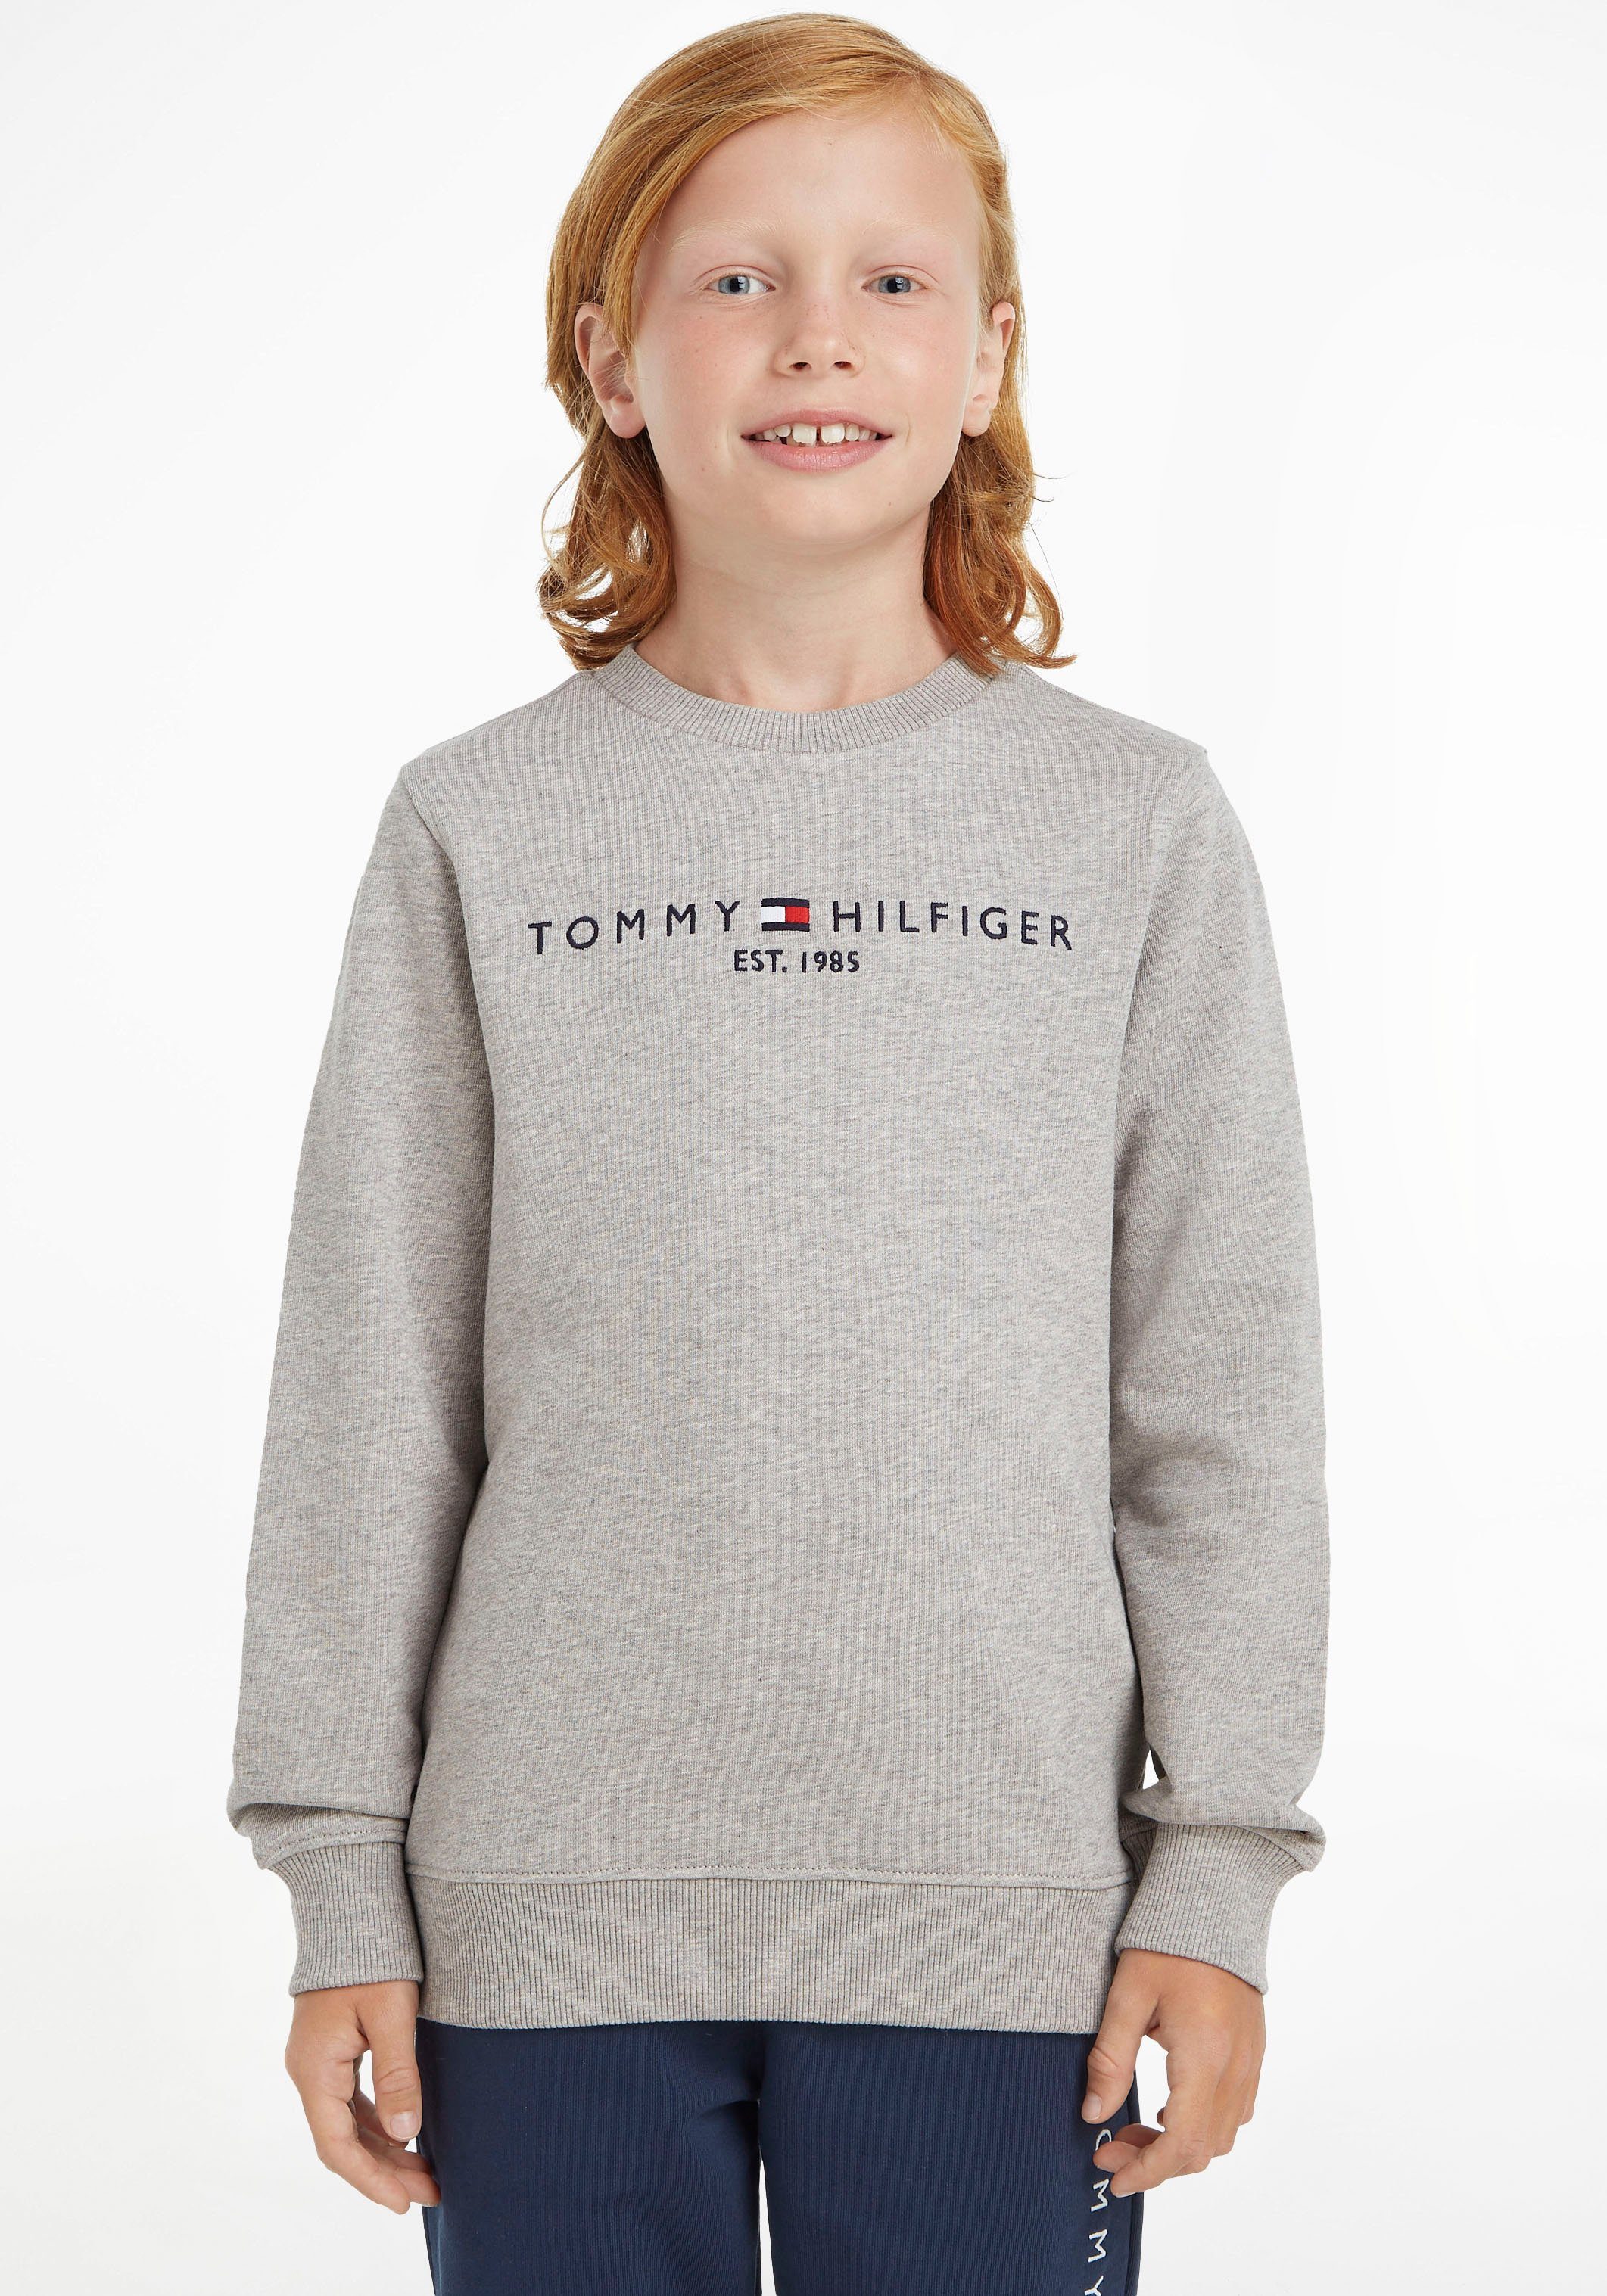 Tommy Hilfiger Sweatshirt ESSENTIAL Kinder und Kids MiniMe,für Mädchen Jungen Junior SWEATSHIRT